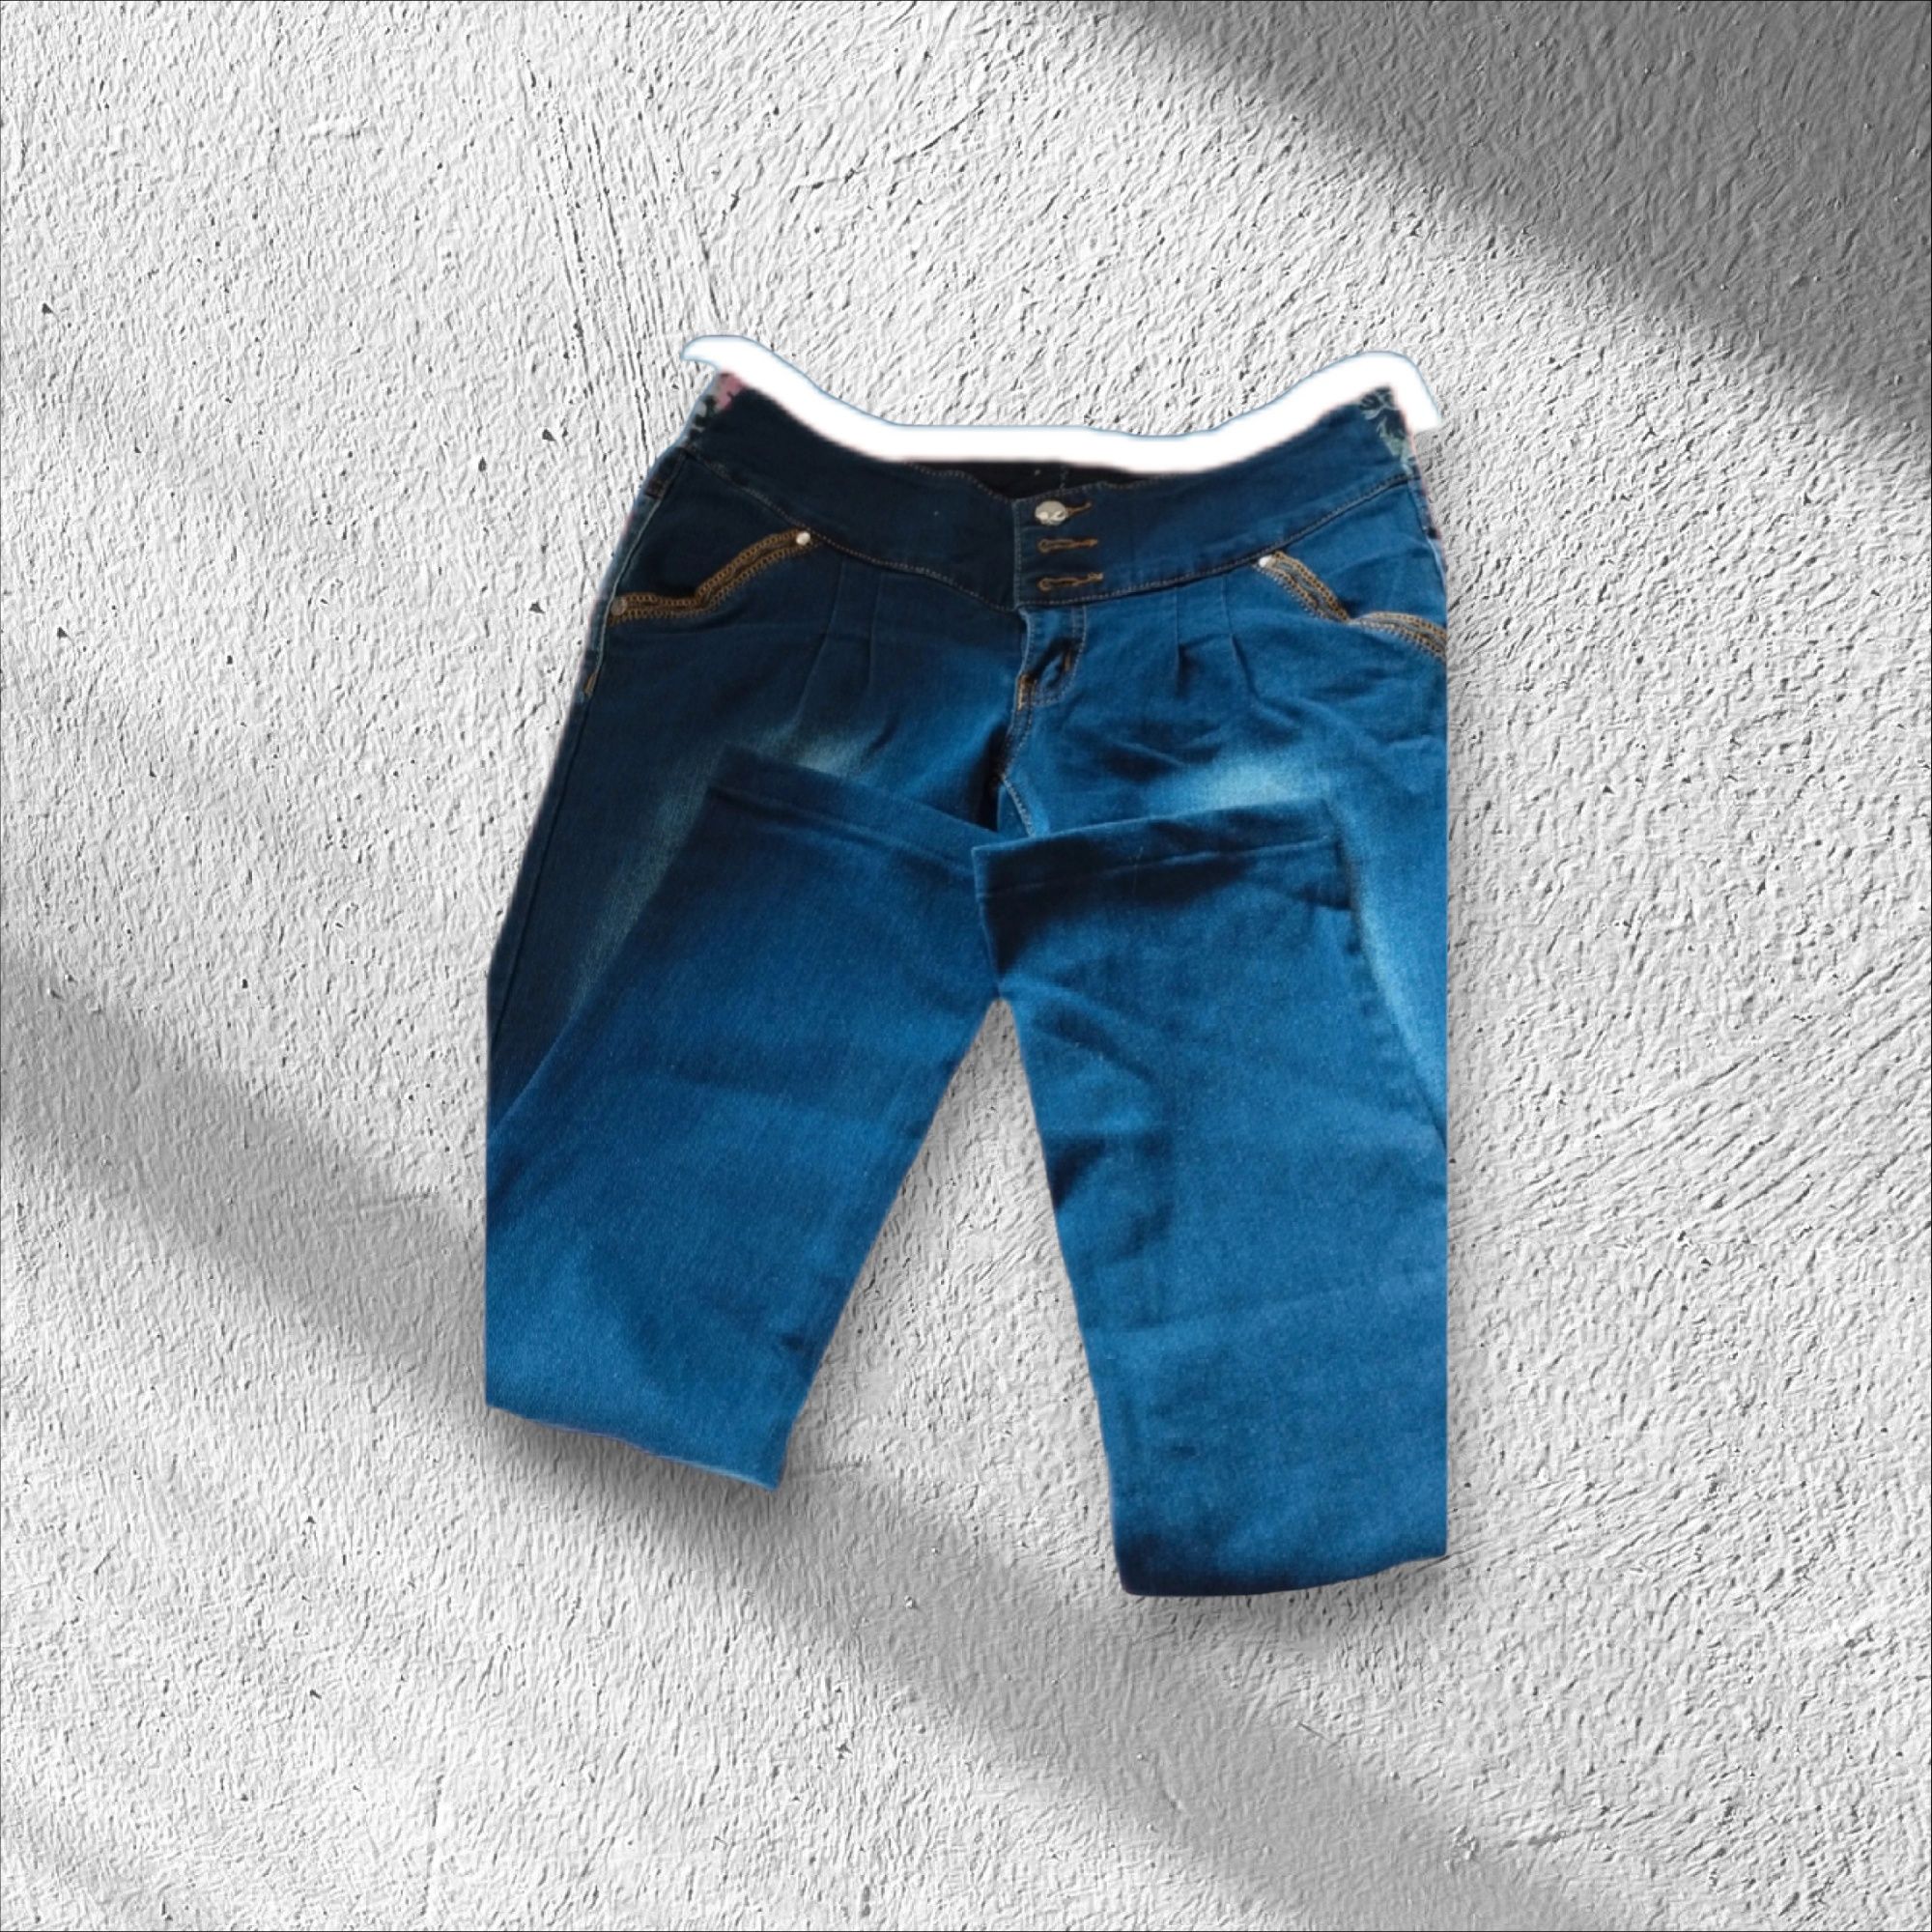 Spodnie jeans siz 31